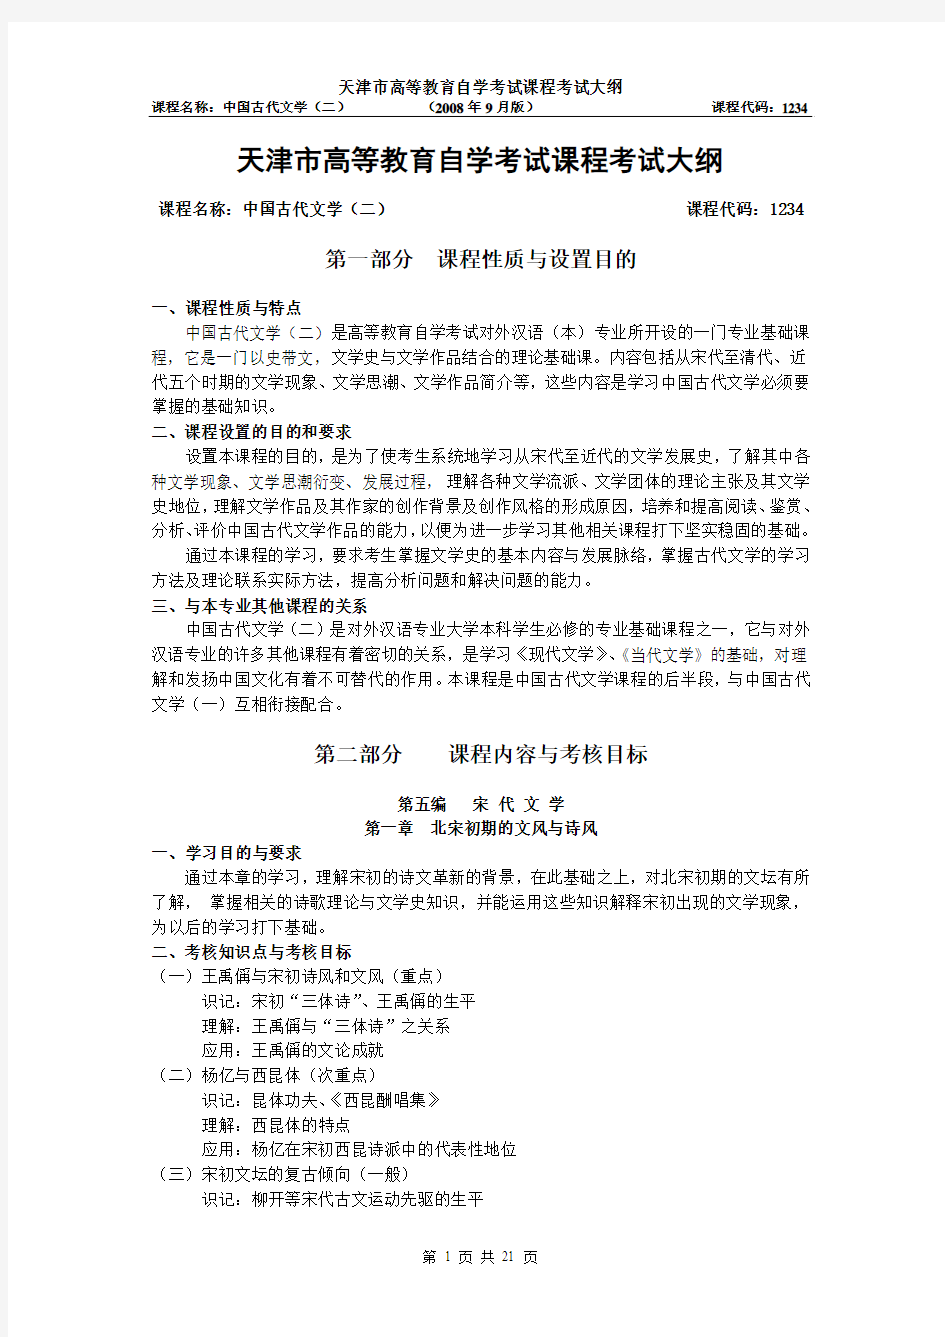 天津2012年自考“中国古代文学(二)”课程考试大纲